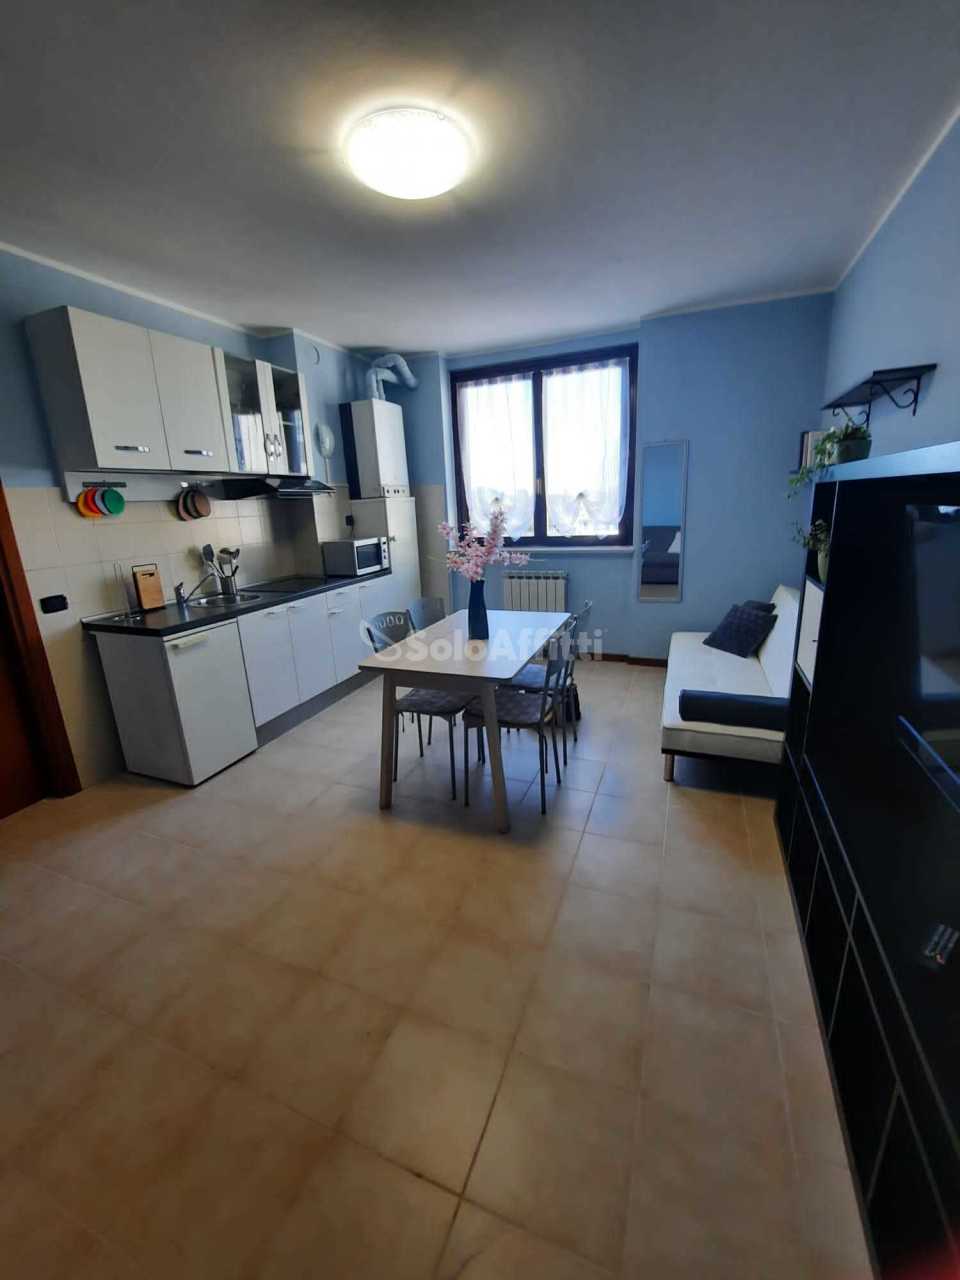 Appartamento in affitto a Olgiate Olona, 1 locali, prezzo € 670 | PortaleAgenzieImmobiliari.it